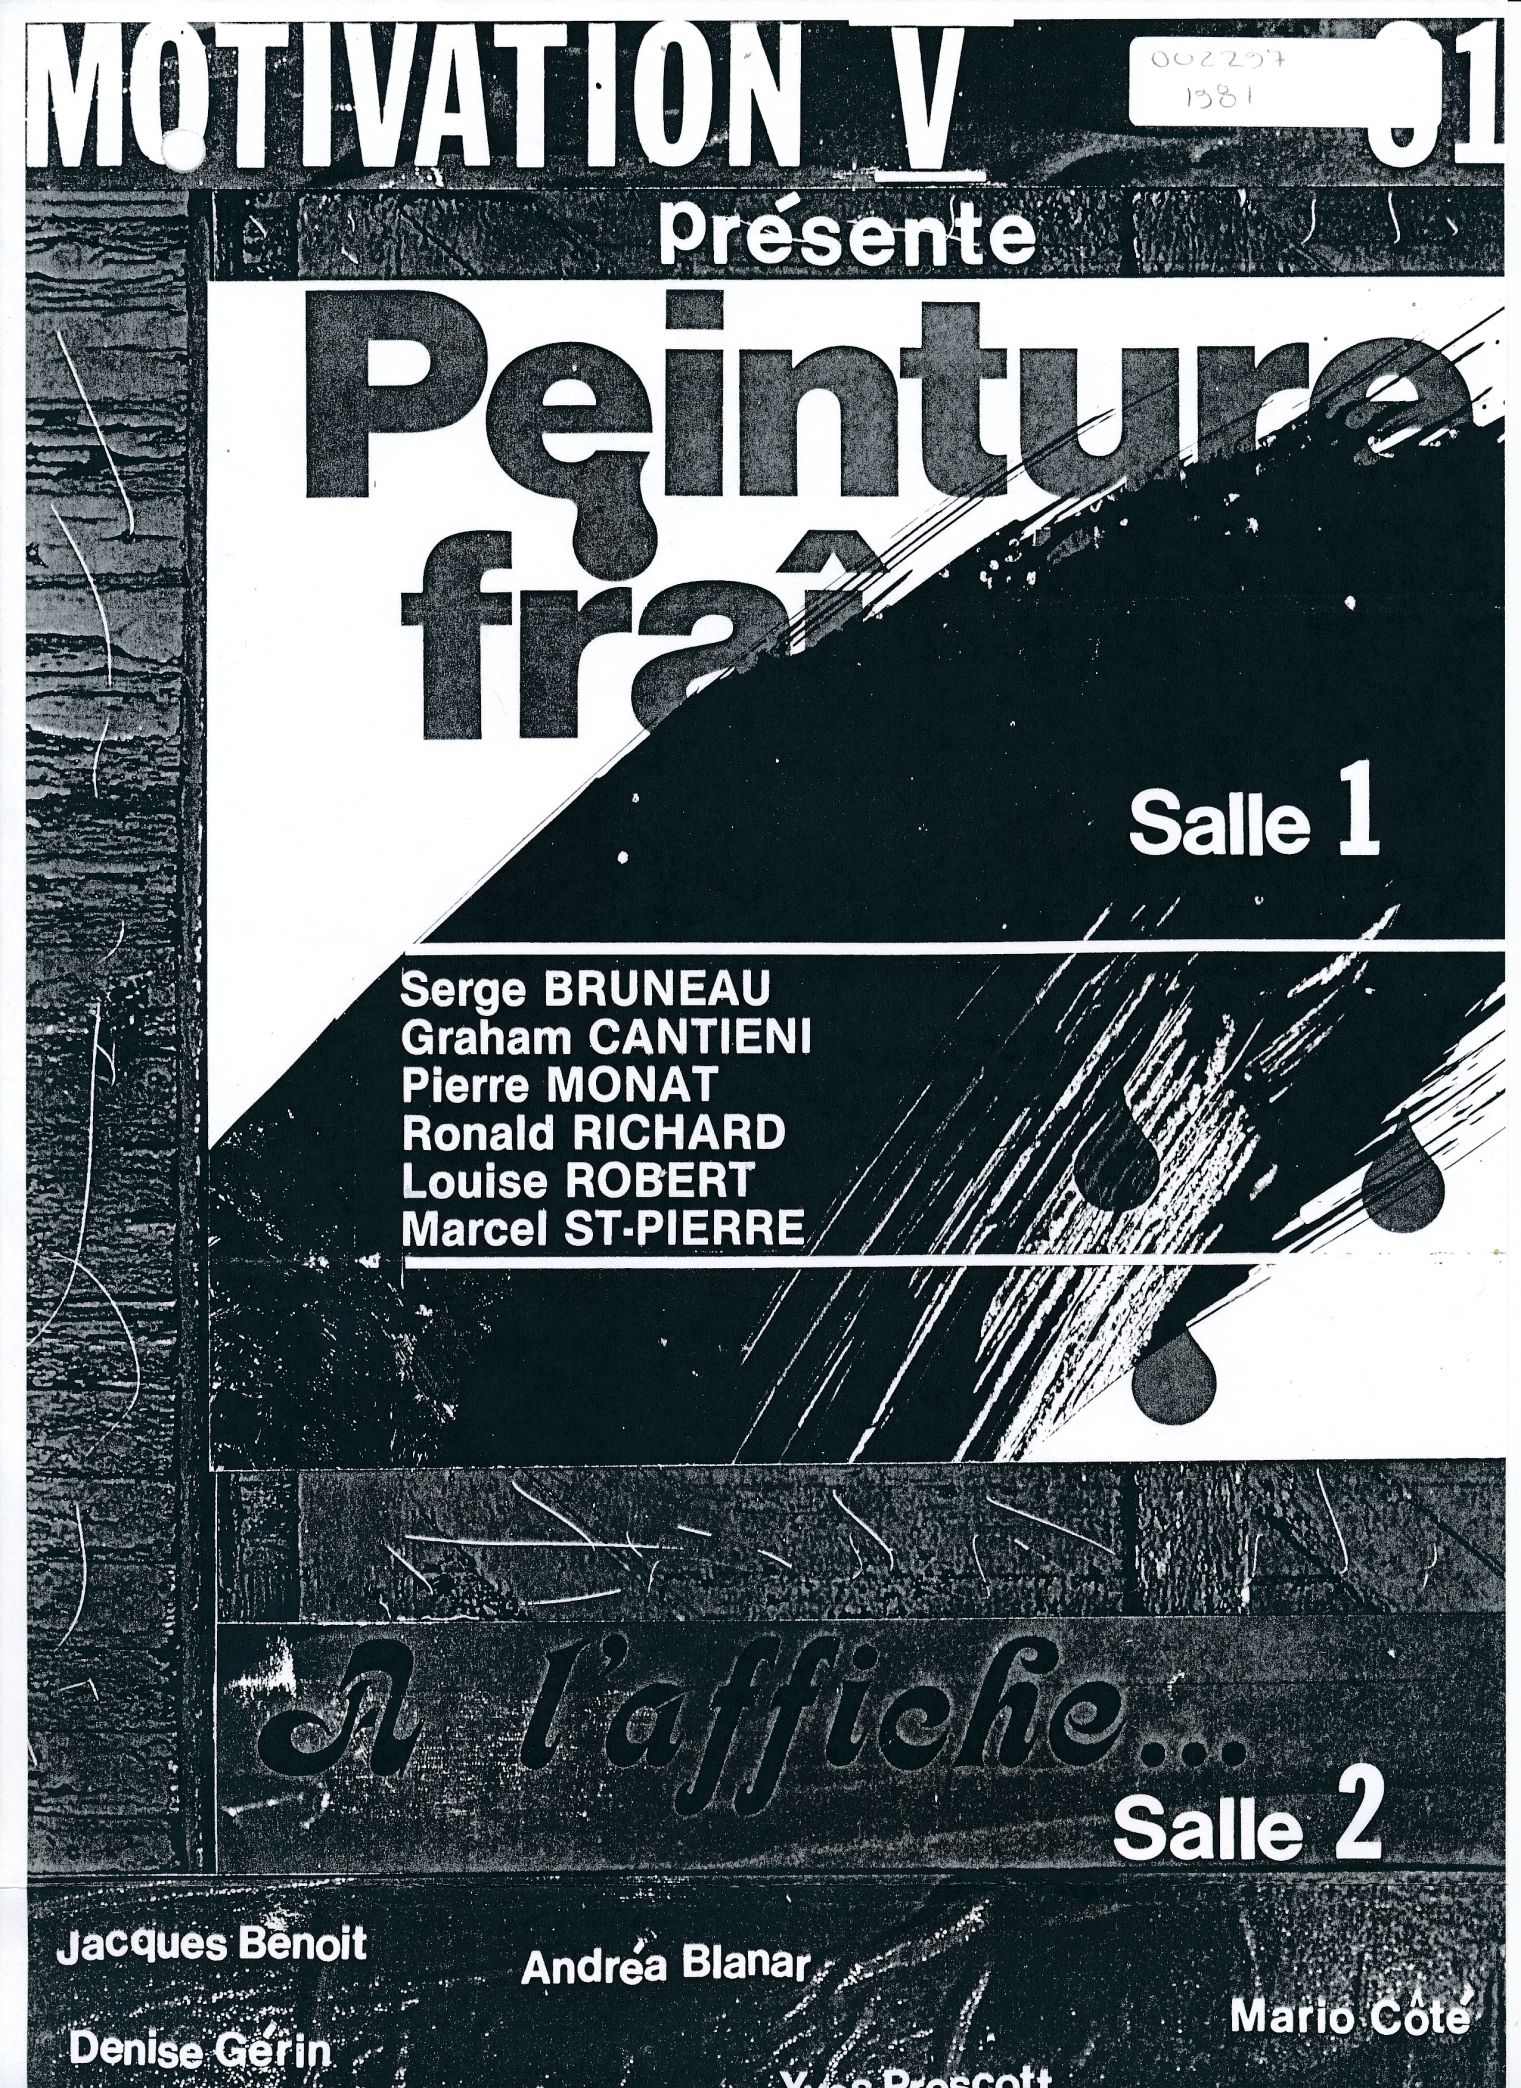 Affiche de l’exposition Peinture fraîche, Galerie Motivation V, Montréal, 1981.